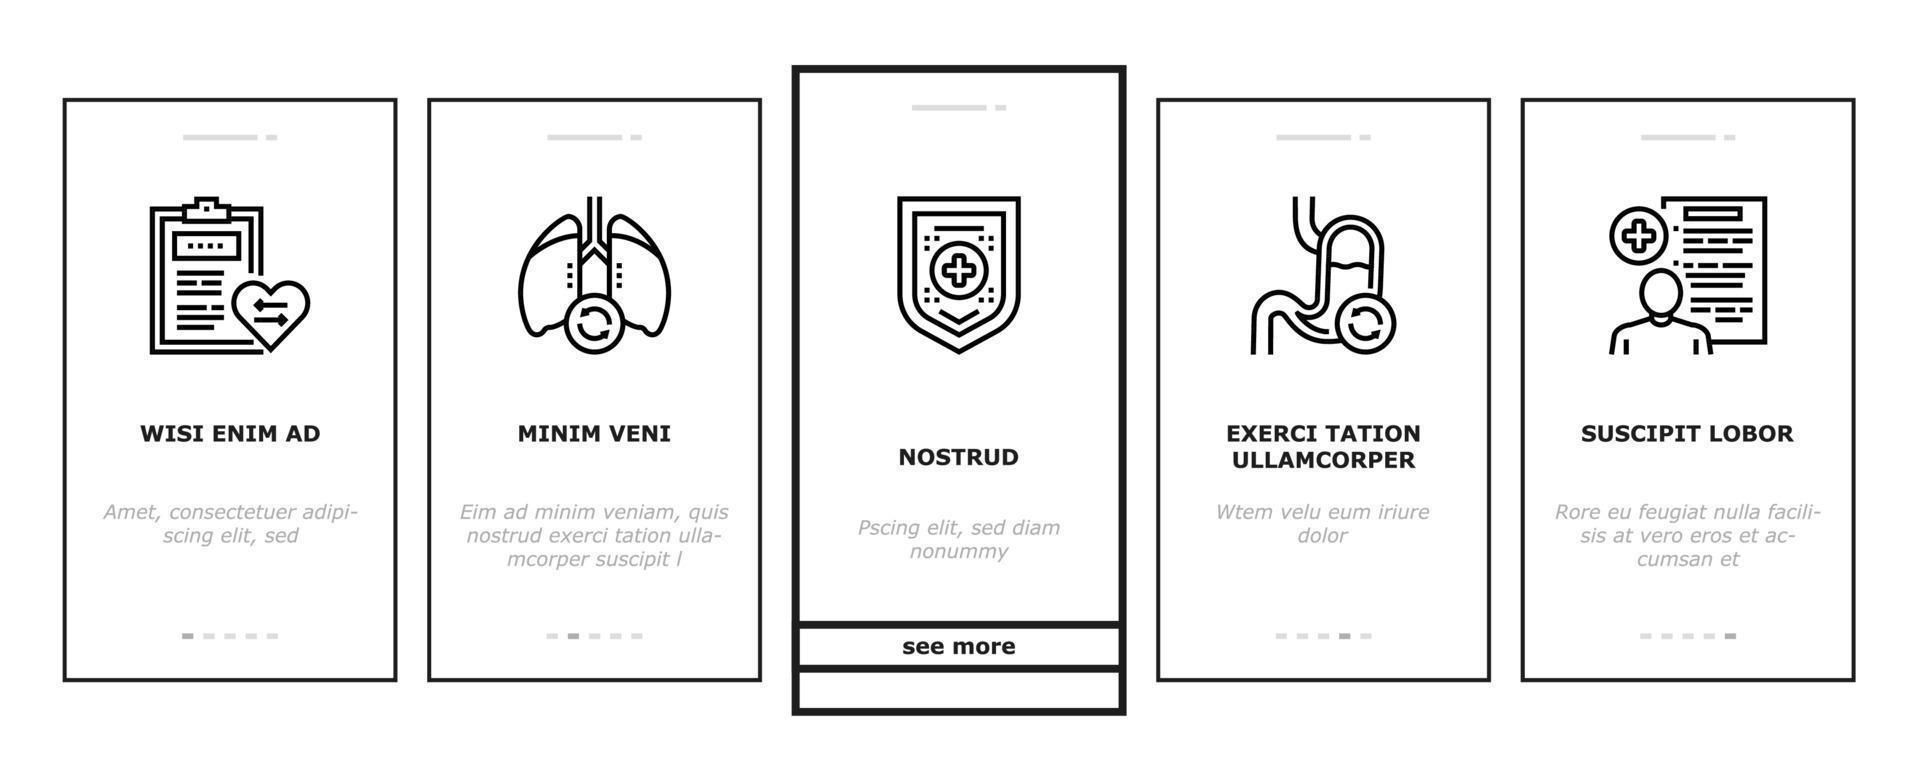 conjunto de iconos de incorporación médica de donación de órganos vector